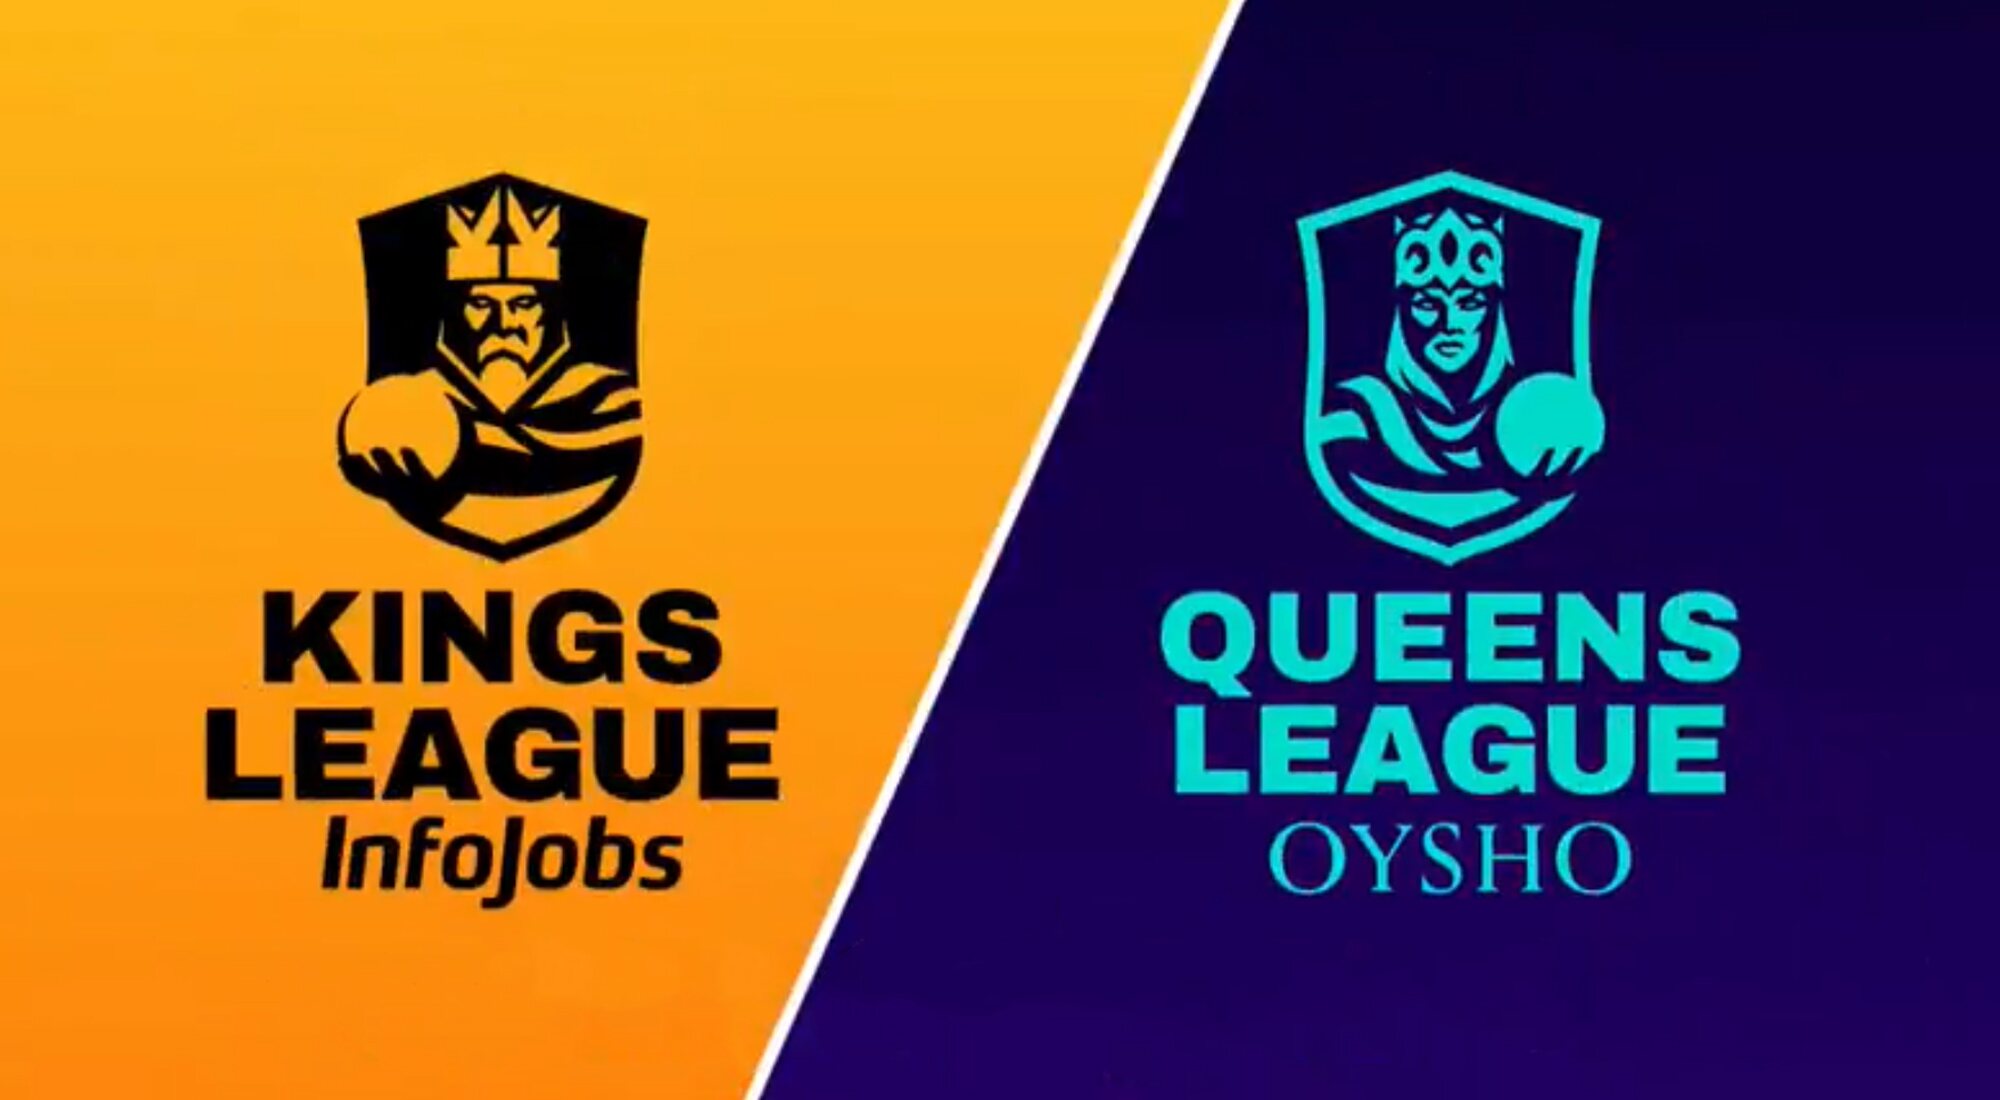 Logos de la Kings League Infojobs y la Queens League Oysho